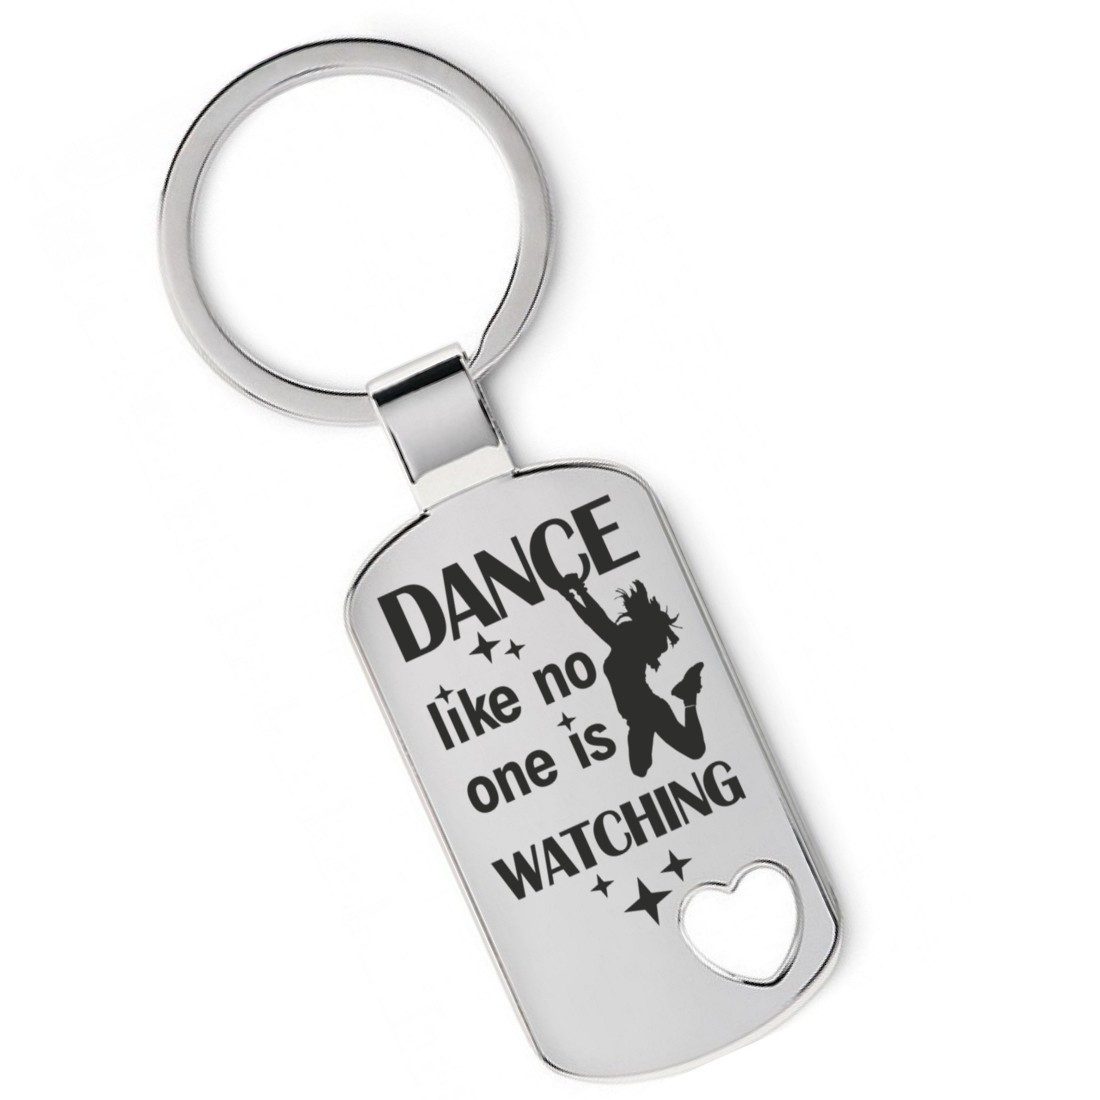 Lieblingsmensch Schlüsselanhänger Dance like no one is watching- ein tolles Geschenk &Glücksbringer (Schlüsselanhänger mit Gravur, inklusive Schlüsselring), Robuste und filigrane Lasergravur